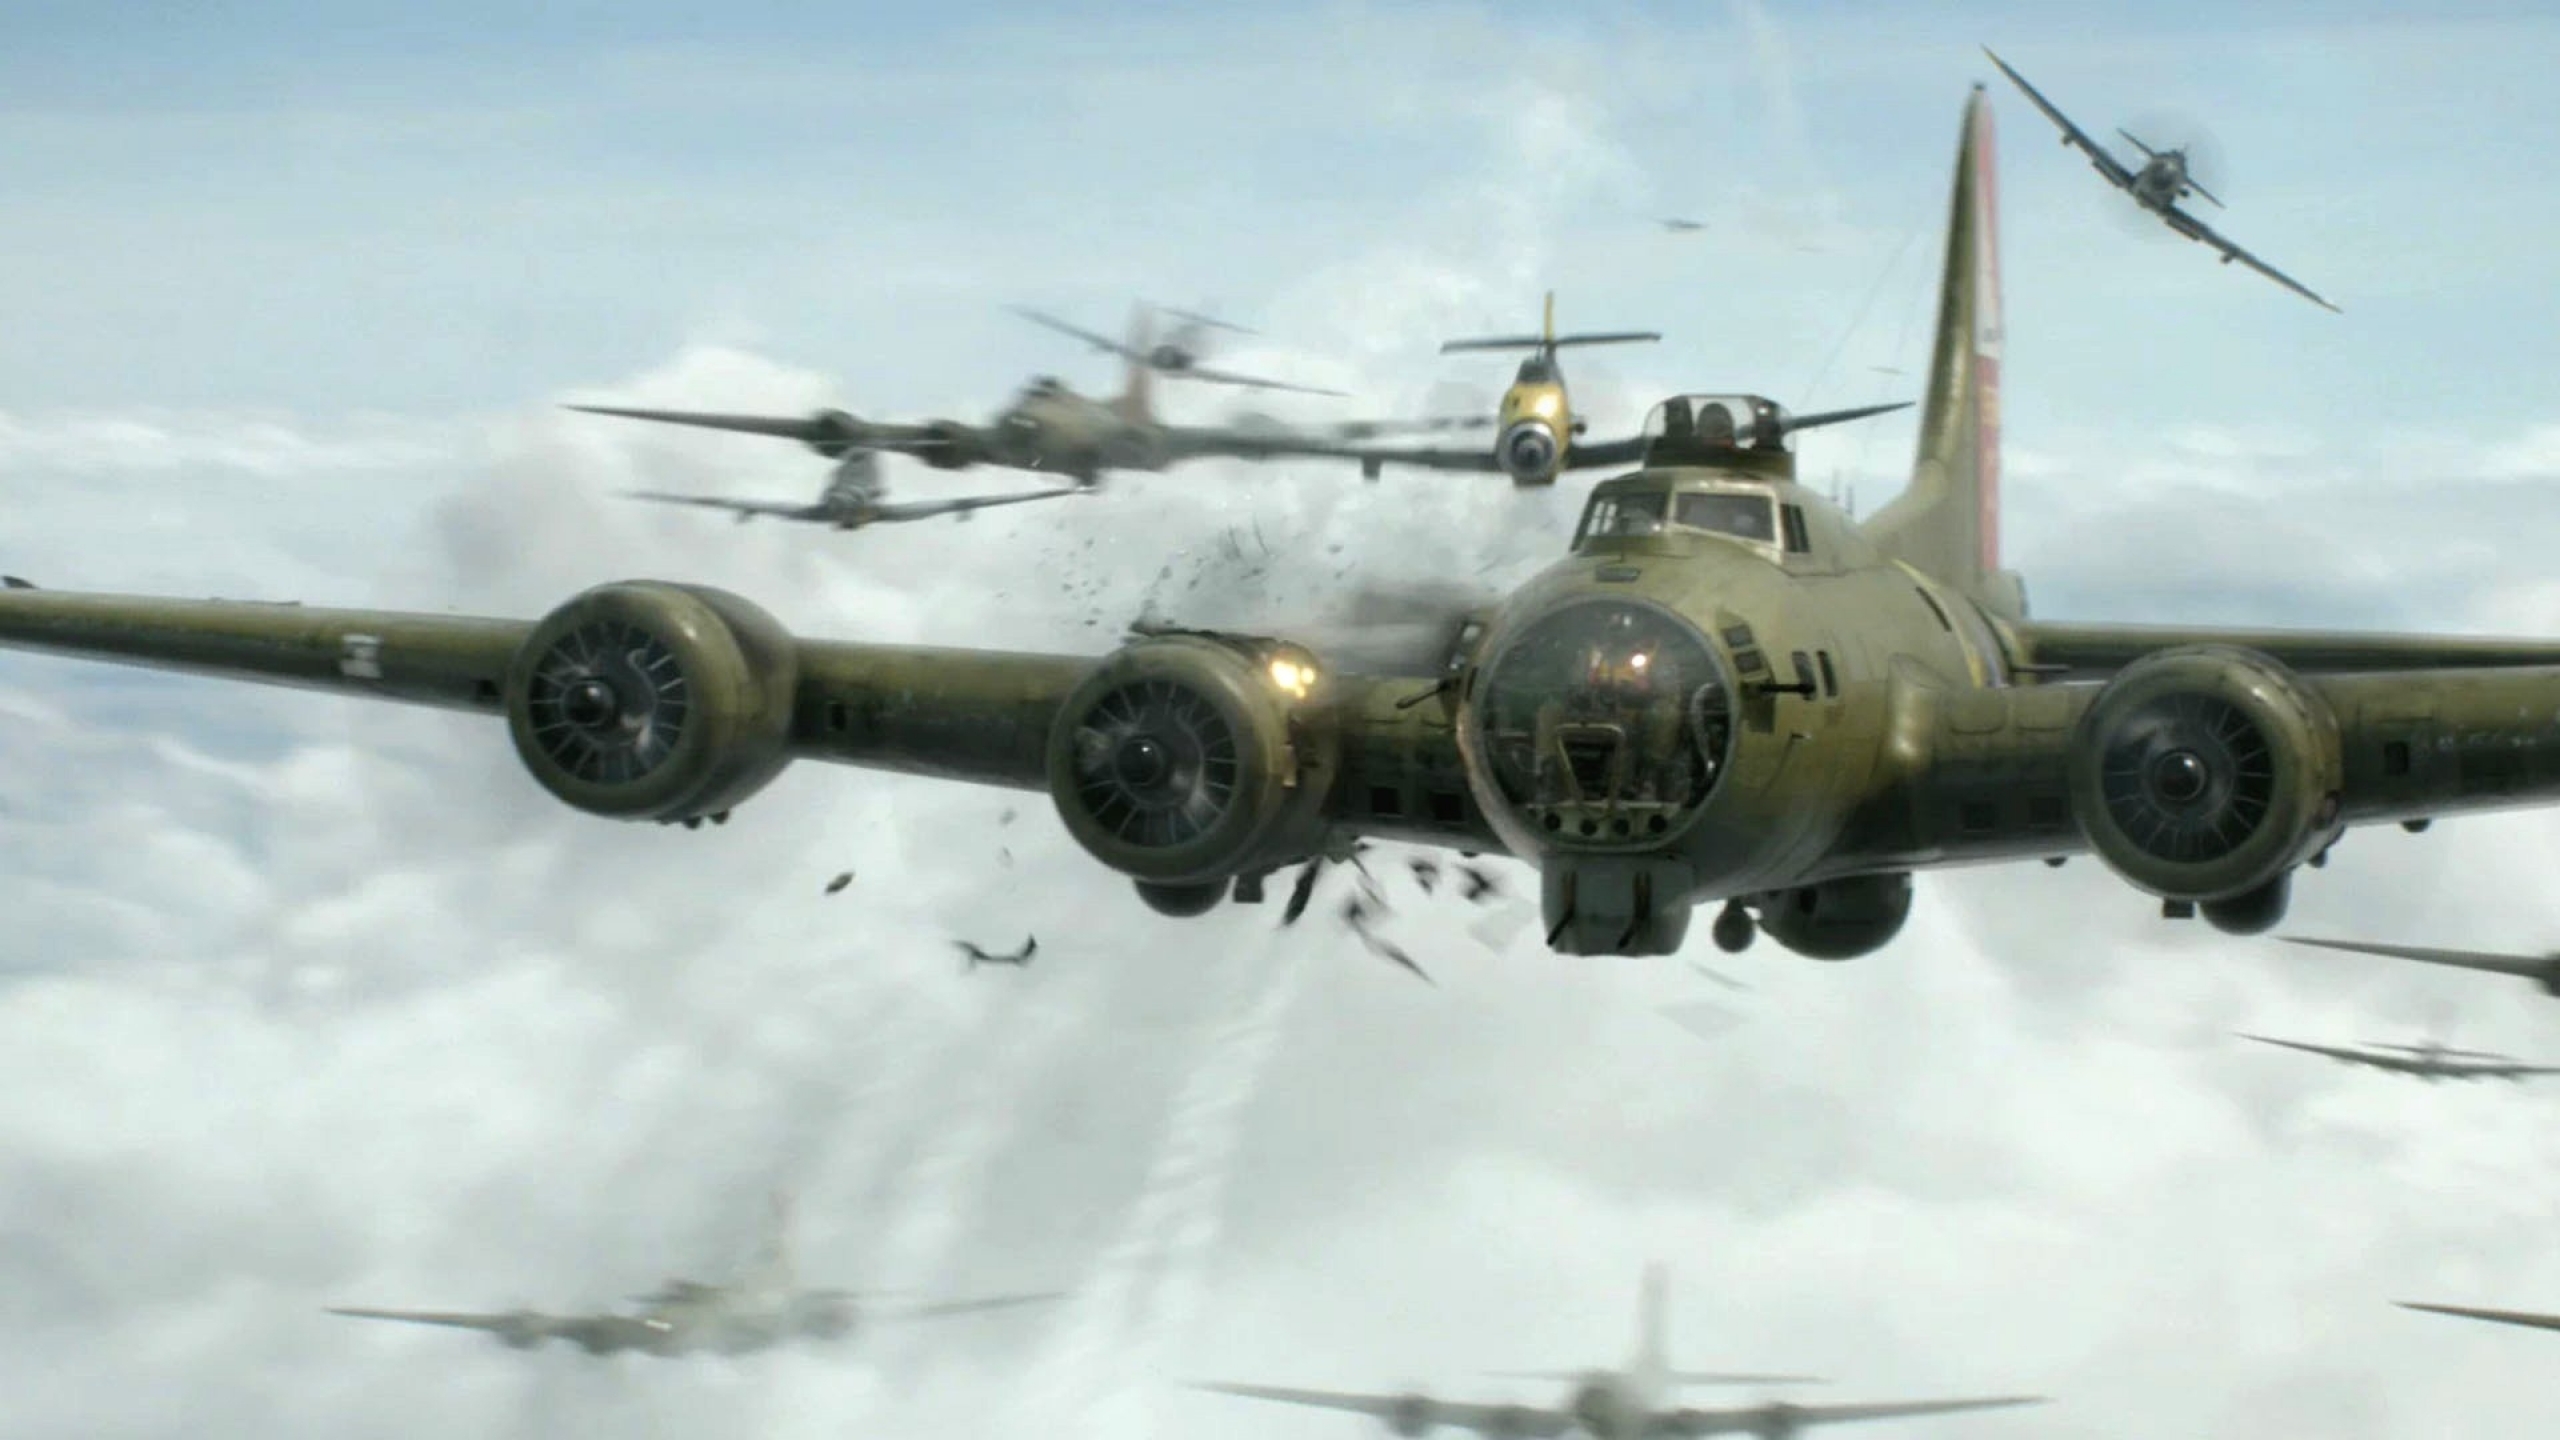 bomber world war ii b17 flying fortress mission 1920x1080 wallpaper 2560x1440